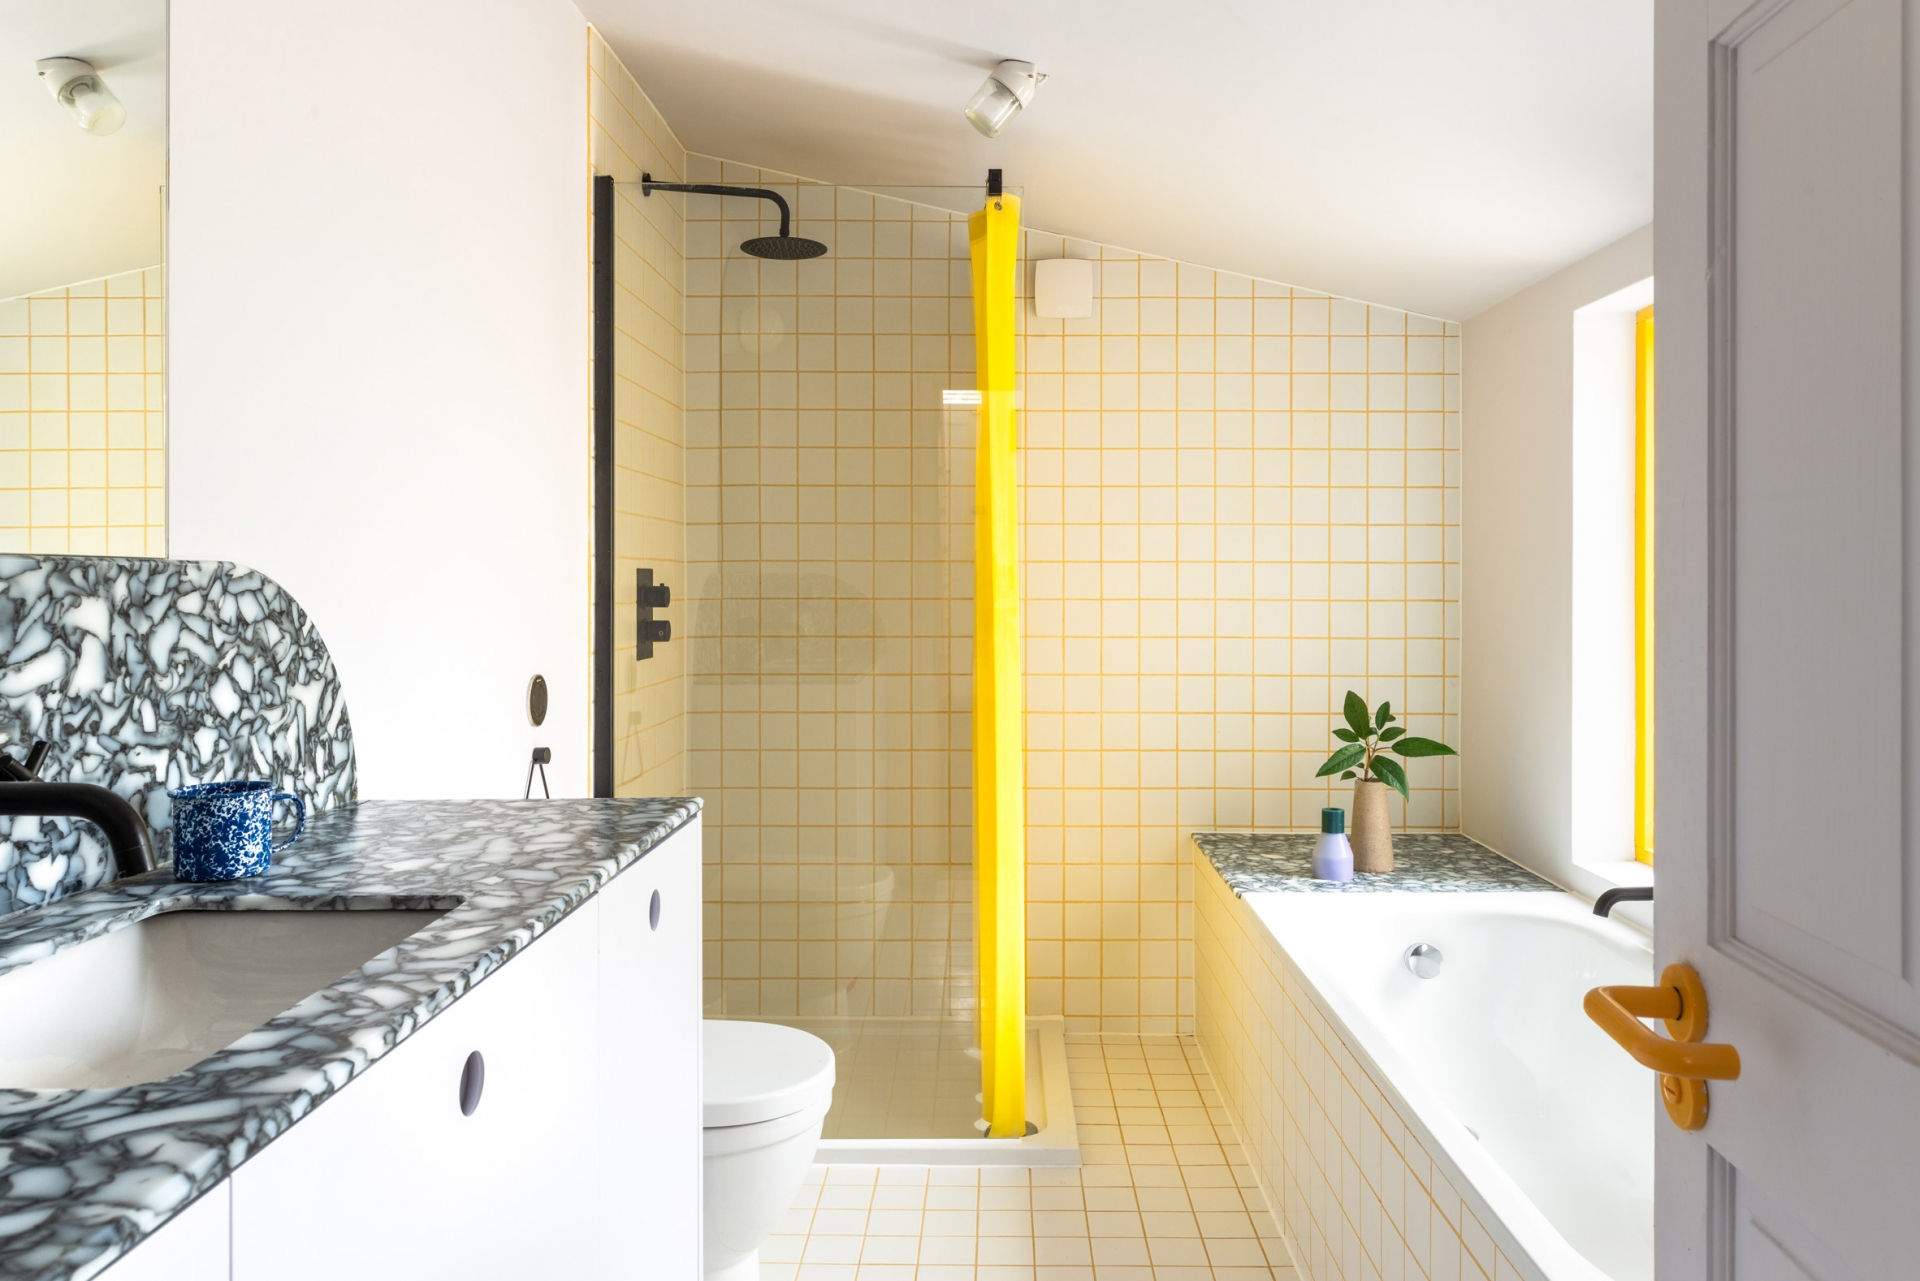 Phòng tắm kết hợp nhà vệ sinh trên tầng 2 của ngôi nhà sử dụng gam màu trắng và vàng tươi sáng như màu của nắng, kết hợp với ánh sáng từ ô cửa sổ càng thêm phần tươi mới. Bề mặt bồn rửa ốp đá granite tự nhiên tạo điểm nhấn về màu sắc cho không gian.